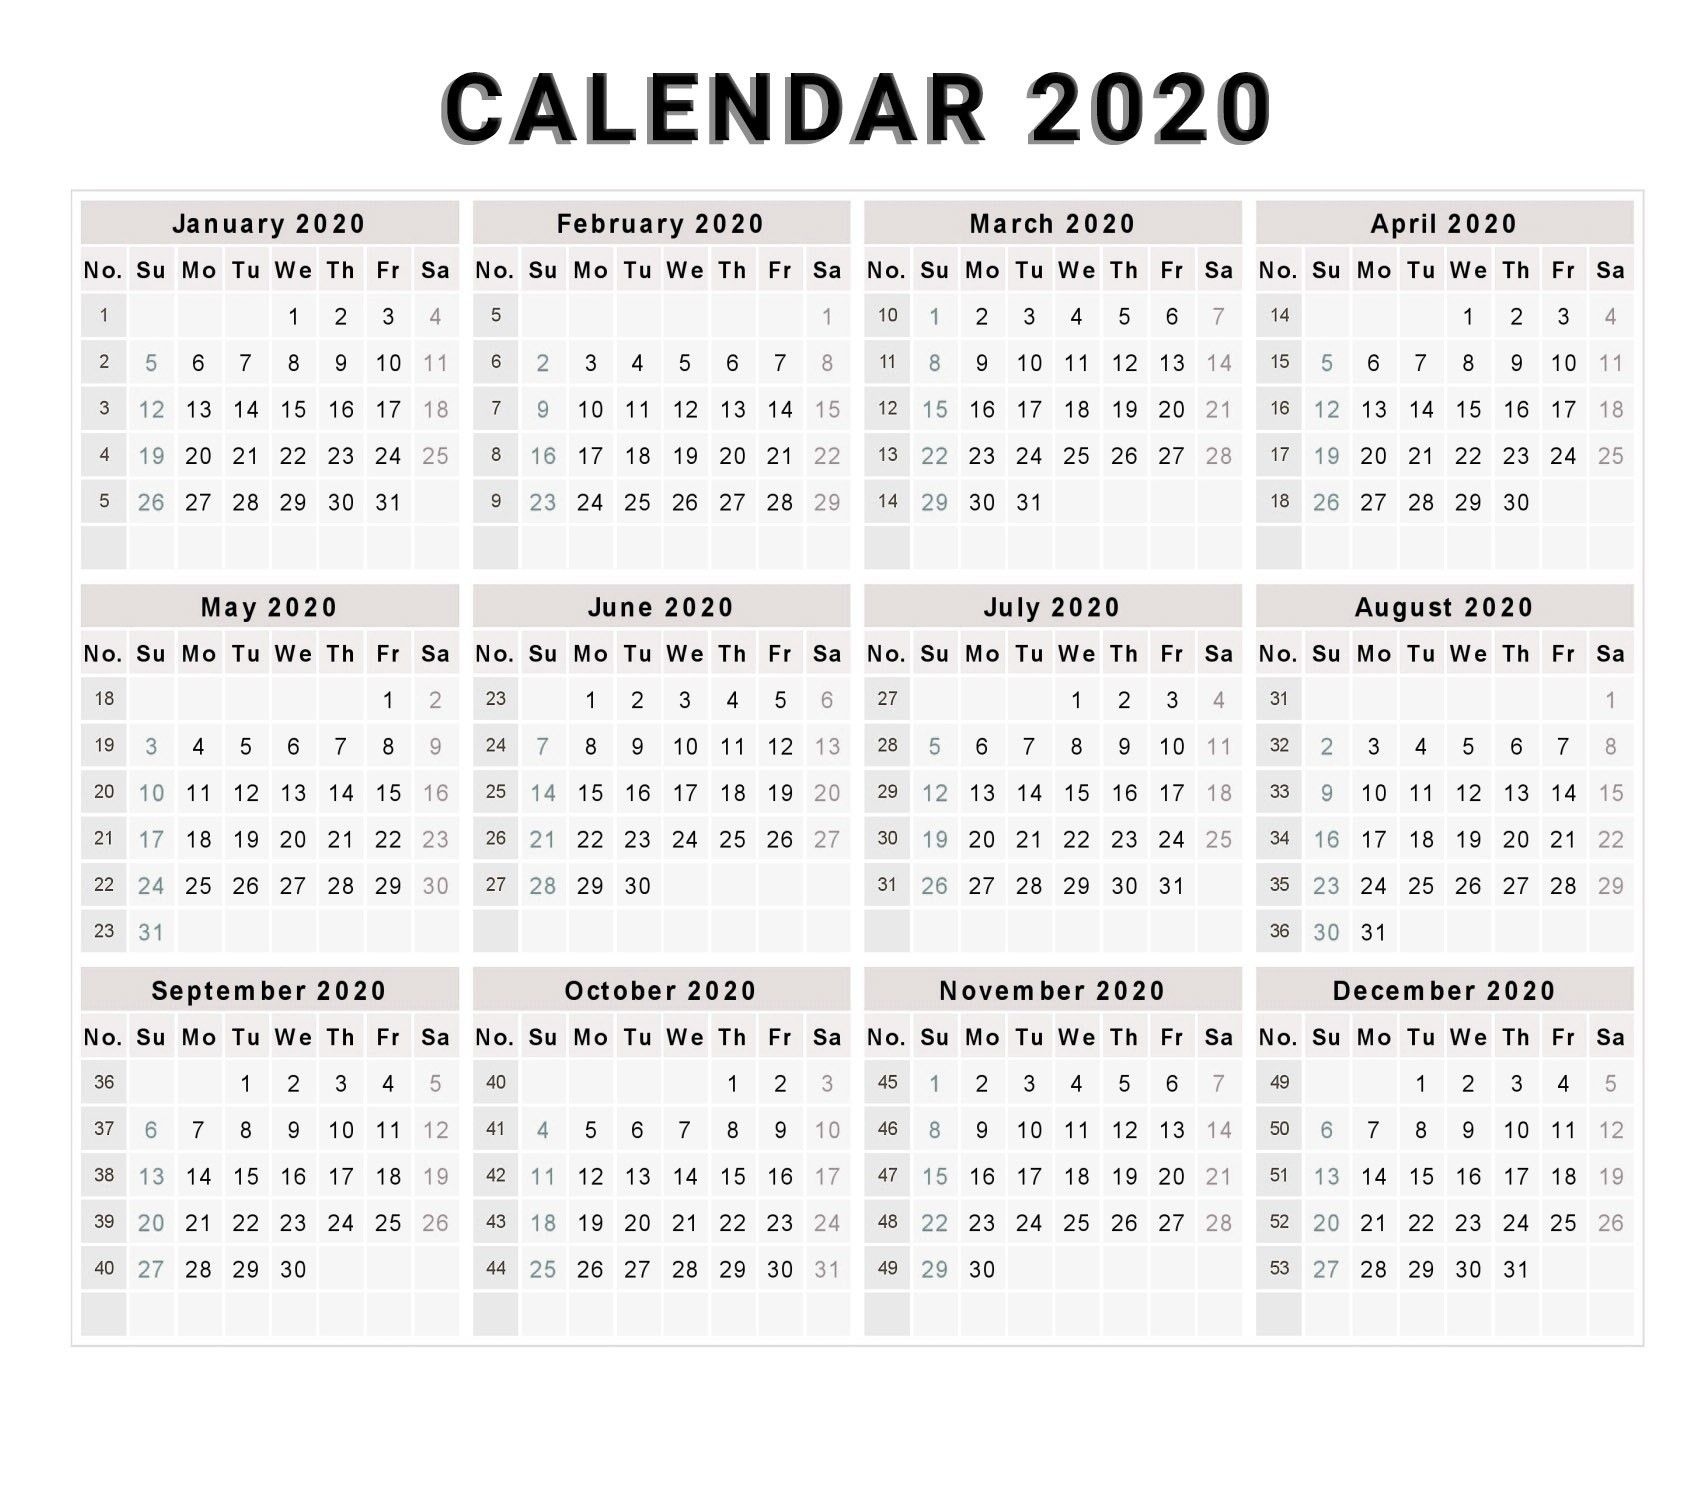 Calendar 2020 Free Printable Calendar 2020 Free 2020 2020 Calendar Template With Week Numbers